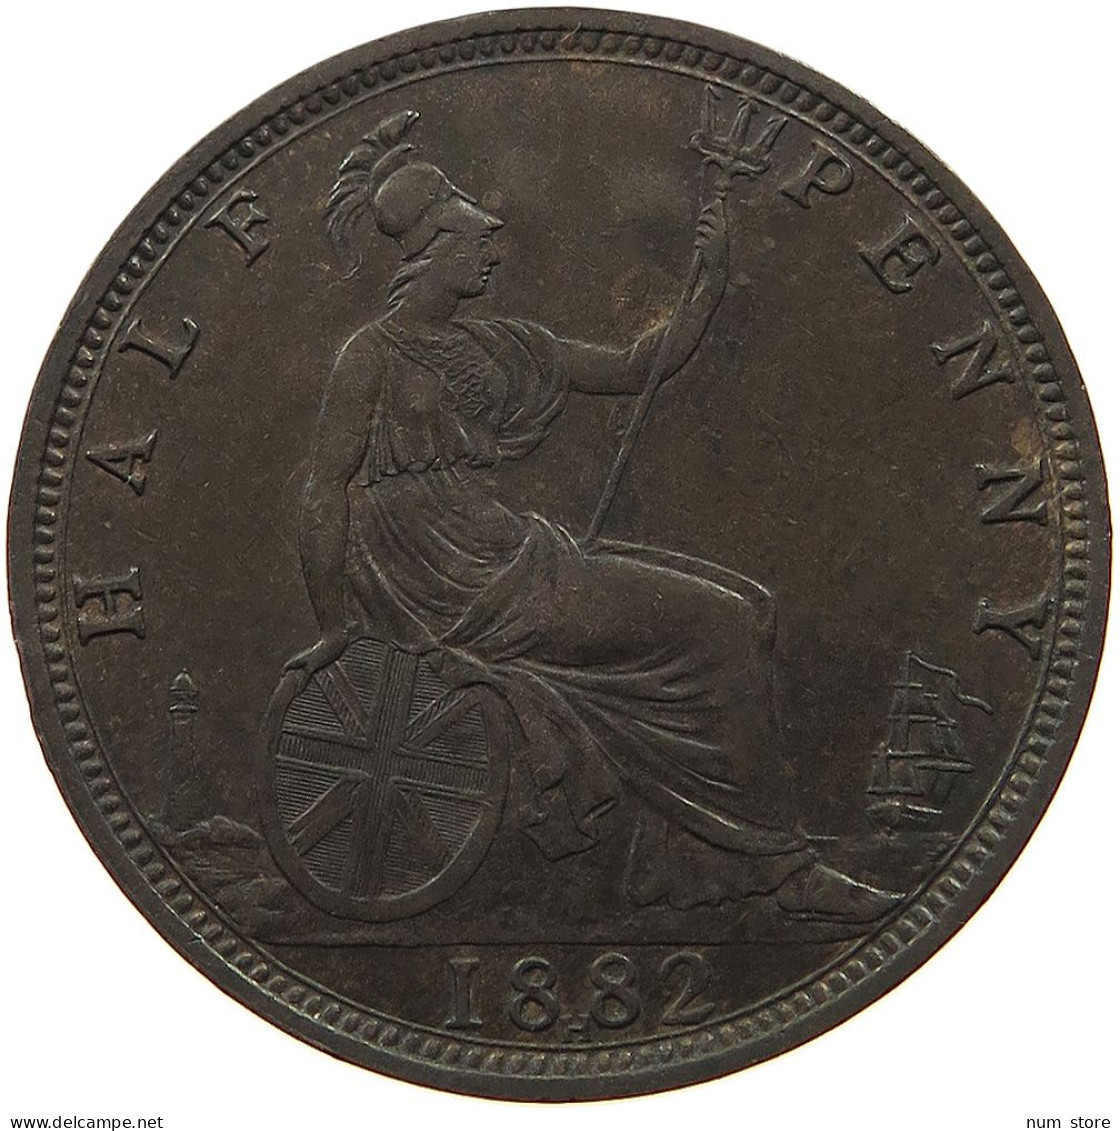 GREAT BRITAIN HALF PENNY 1882 H Victoria 1837-1901 HALF PENNY 1882 H VICTORIA SATIRIQUE ENGRAVED AS KING #t058 0531 - C. 1/2 Penny